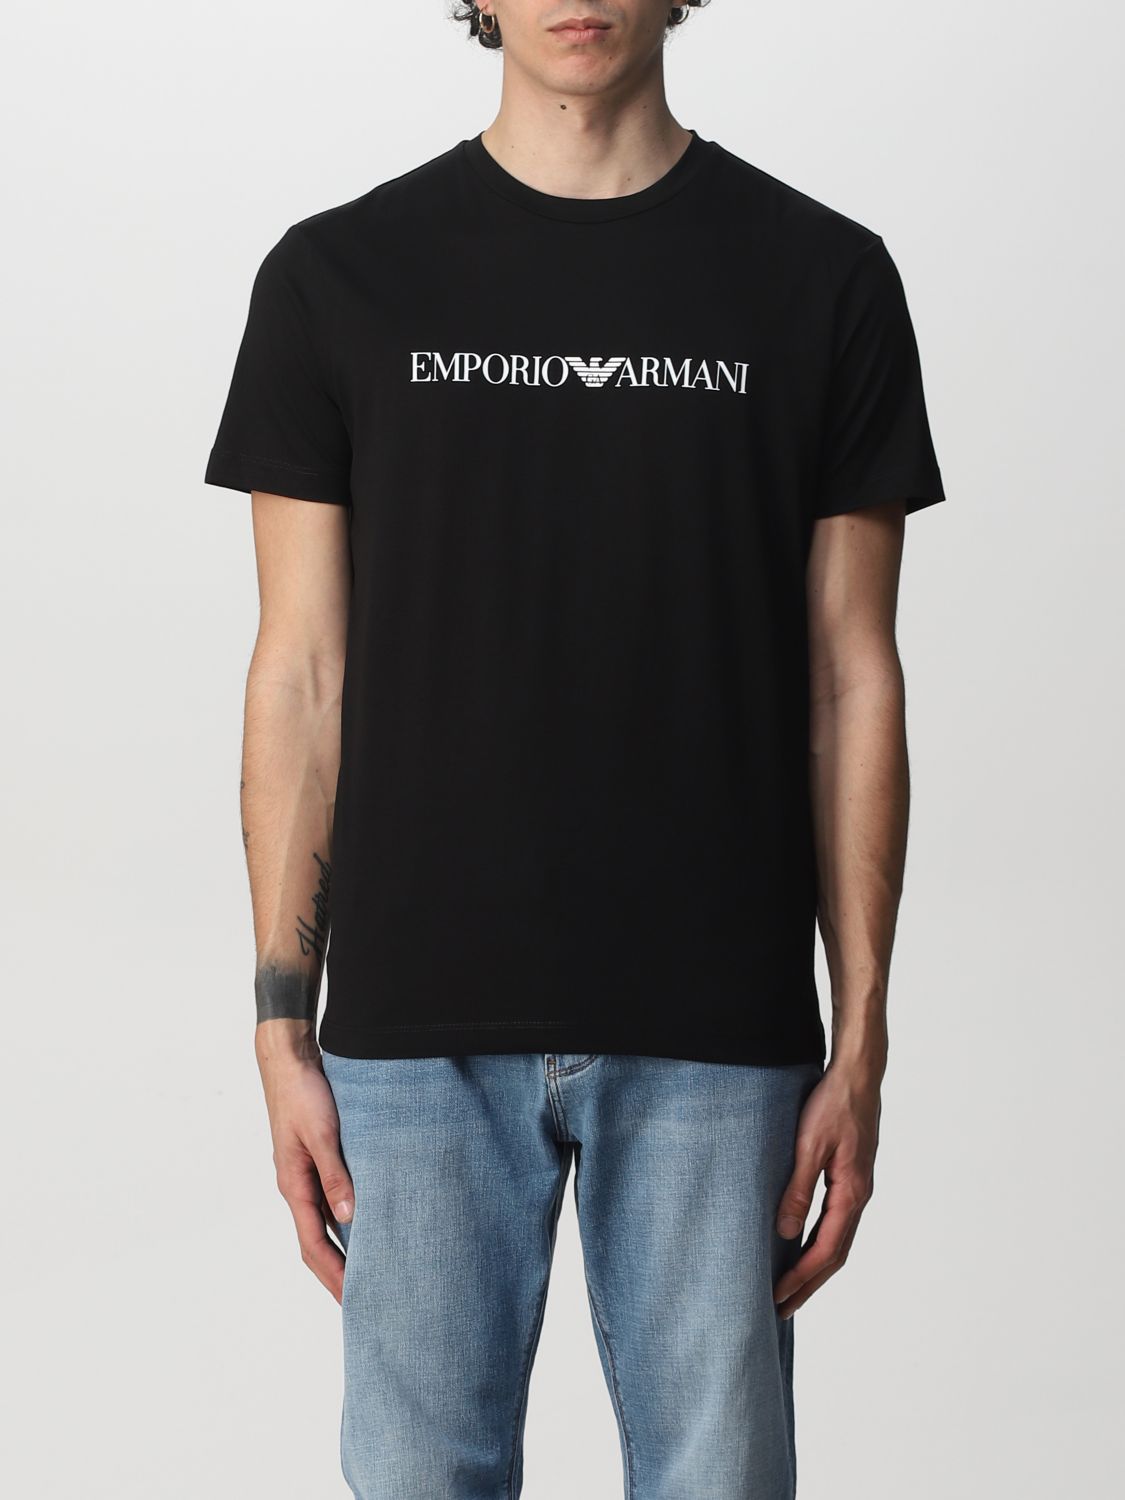 Emporio Armani Cotton T-shirt In Black 1